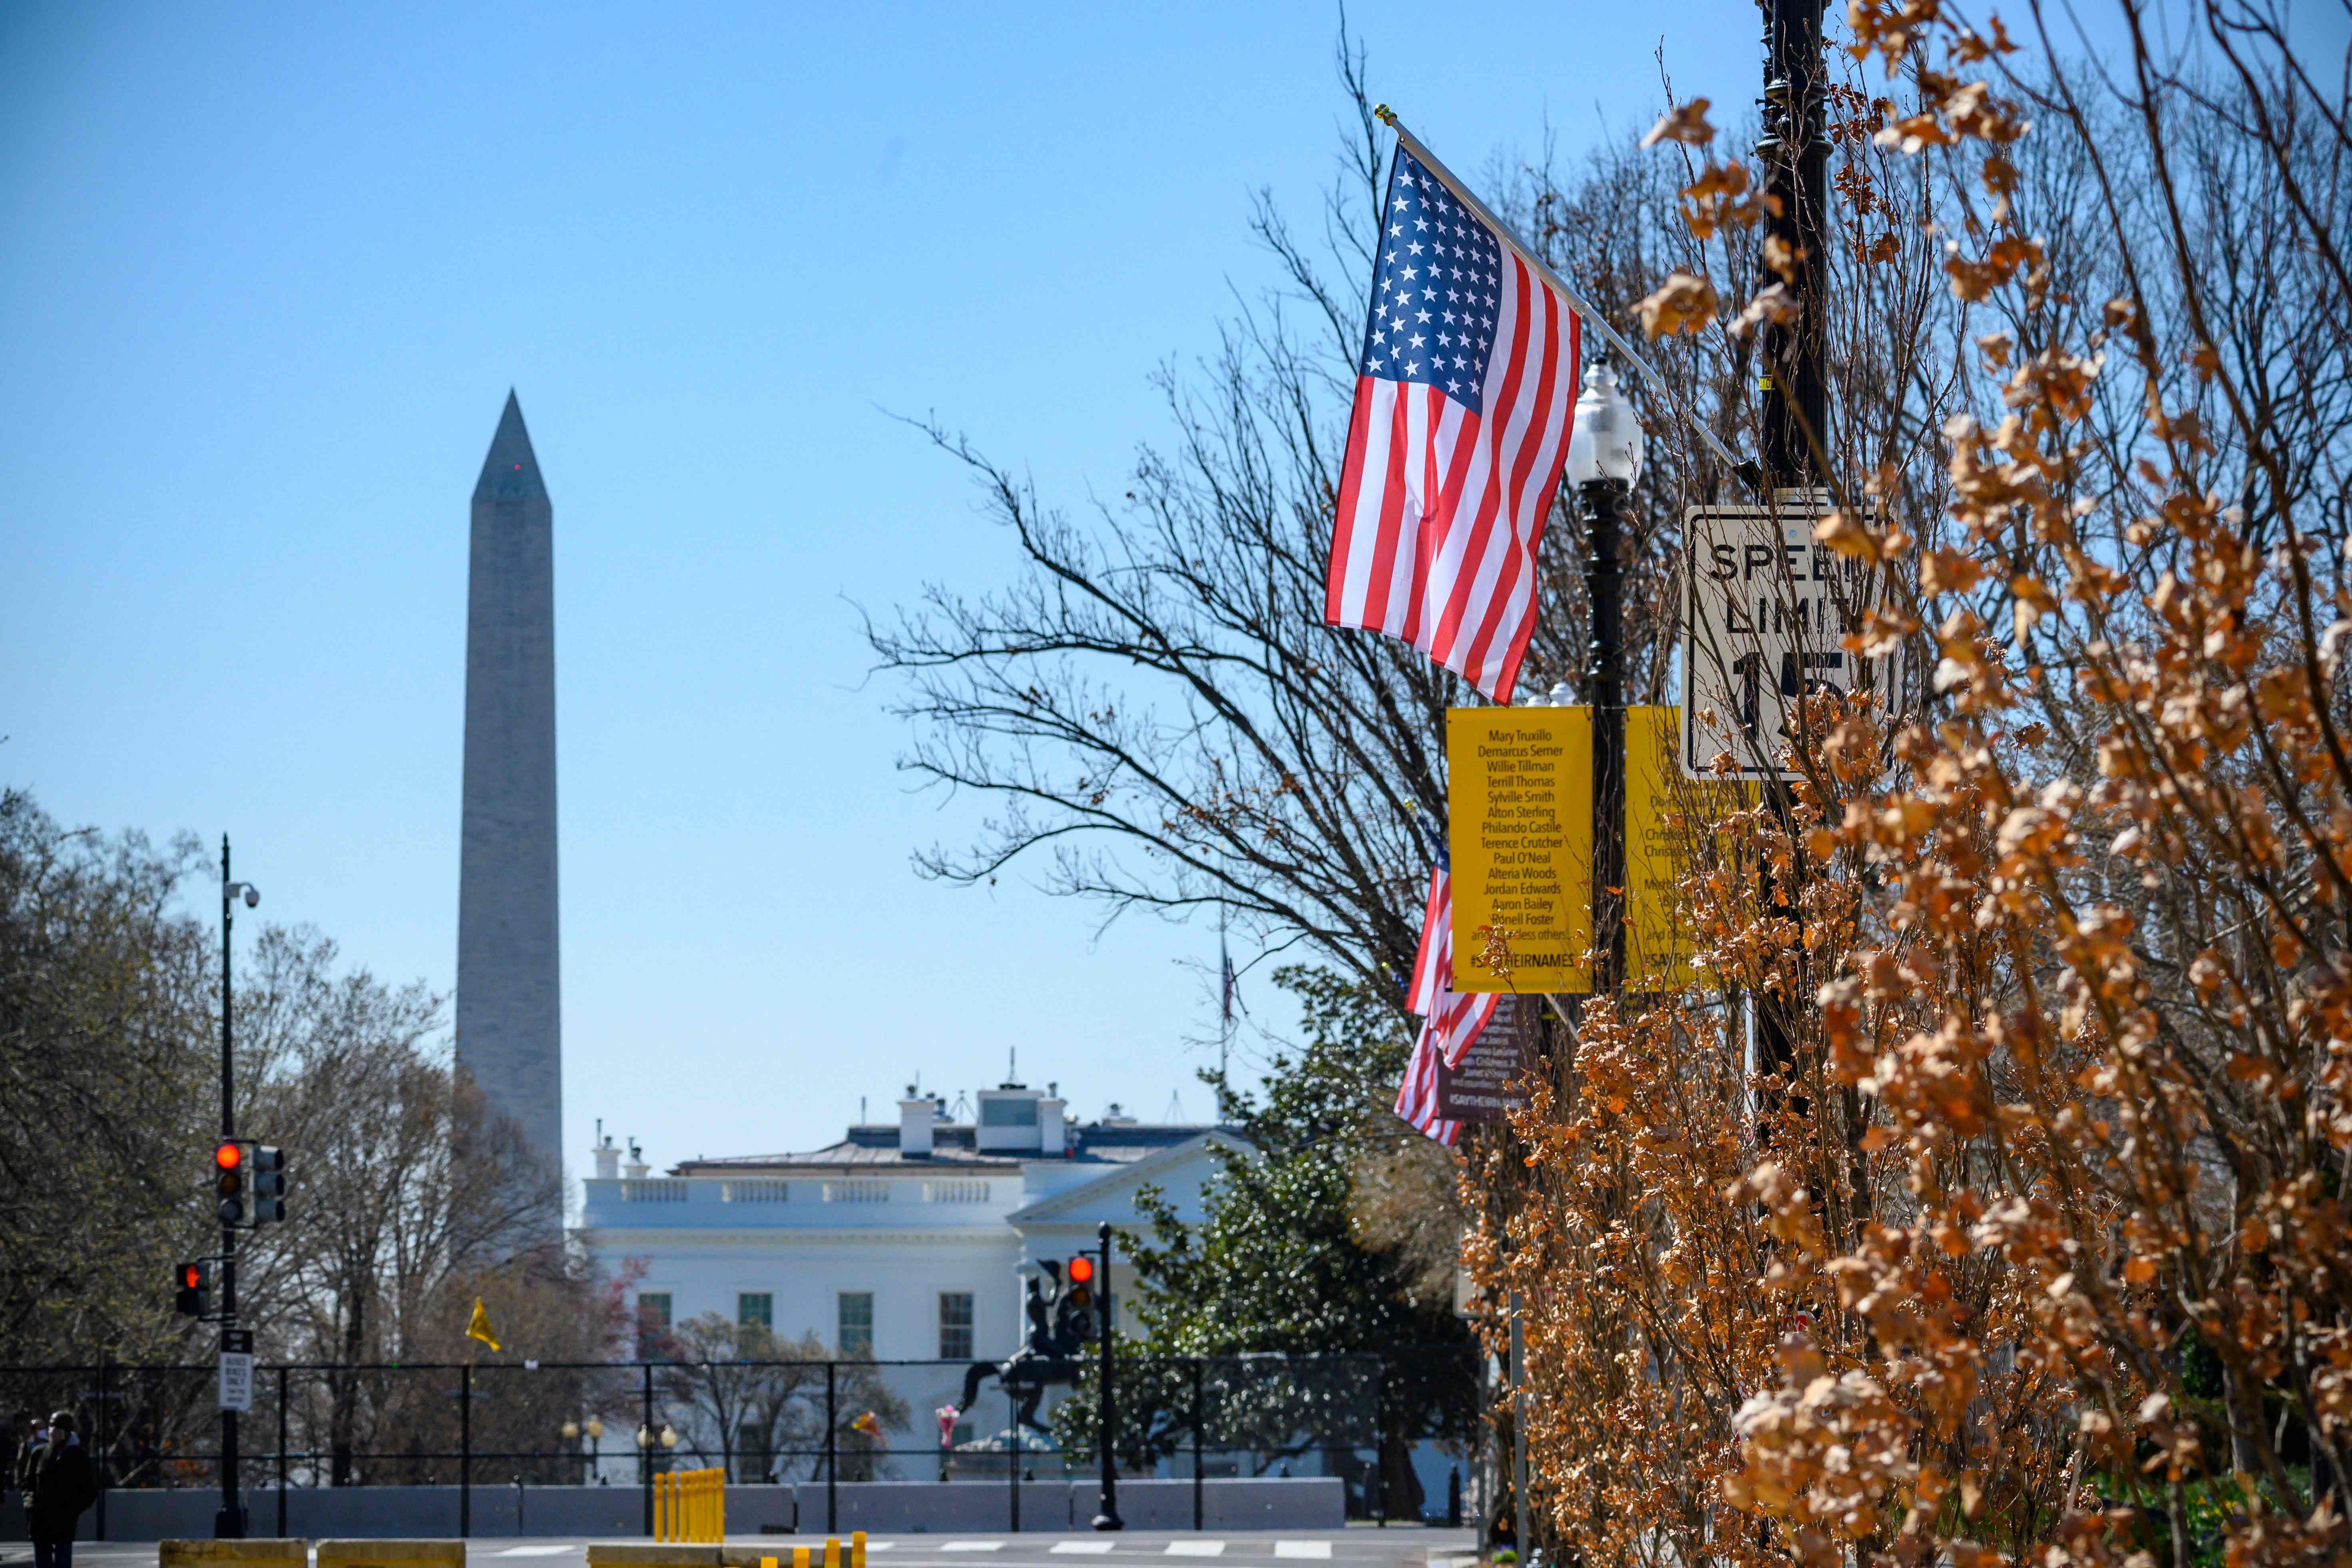 Las barras y estrellas se ciernen sobre Black Lives Matter Plaza en Washington DC, con una estrella adicional que simboliza la ambición de hacer del Distrito de Columbia el estado 51 de los EE. UU.